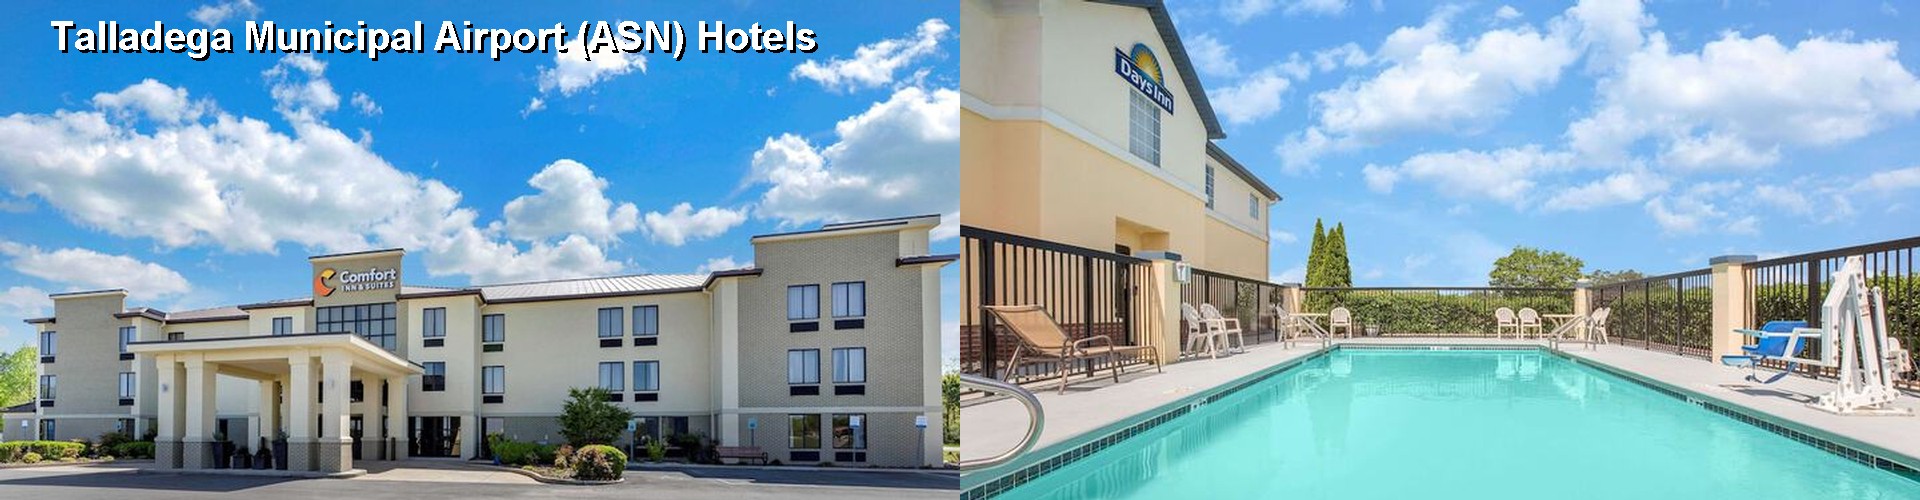 5 Best Hotels near Talladega Municipal Airport (ASN)